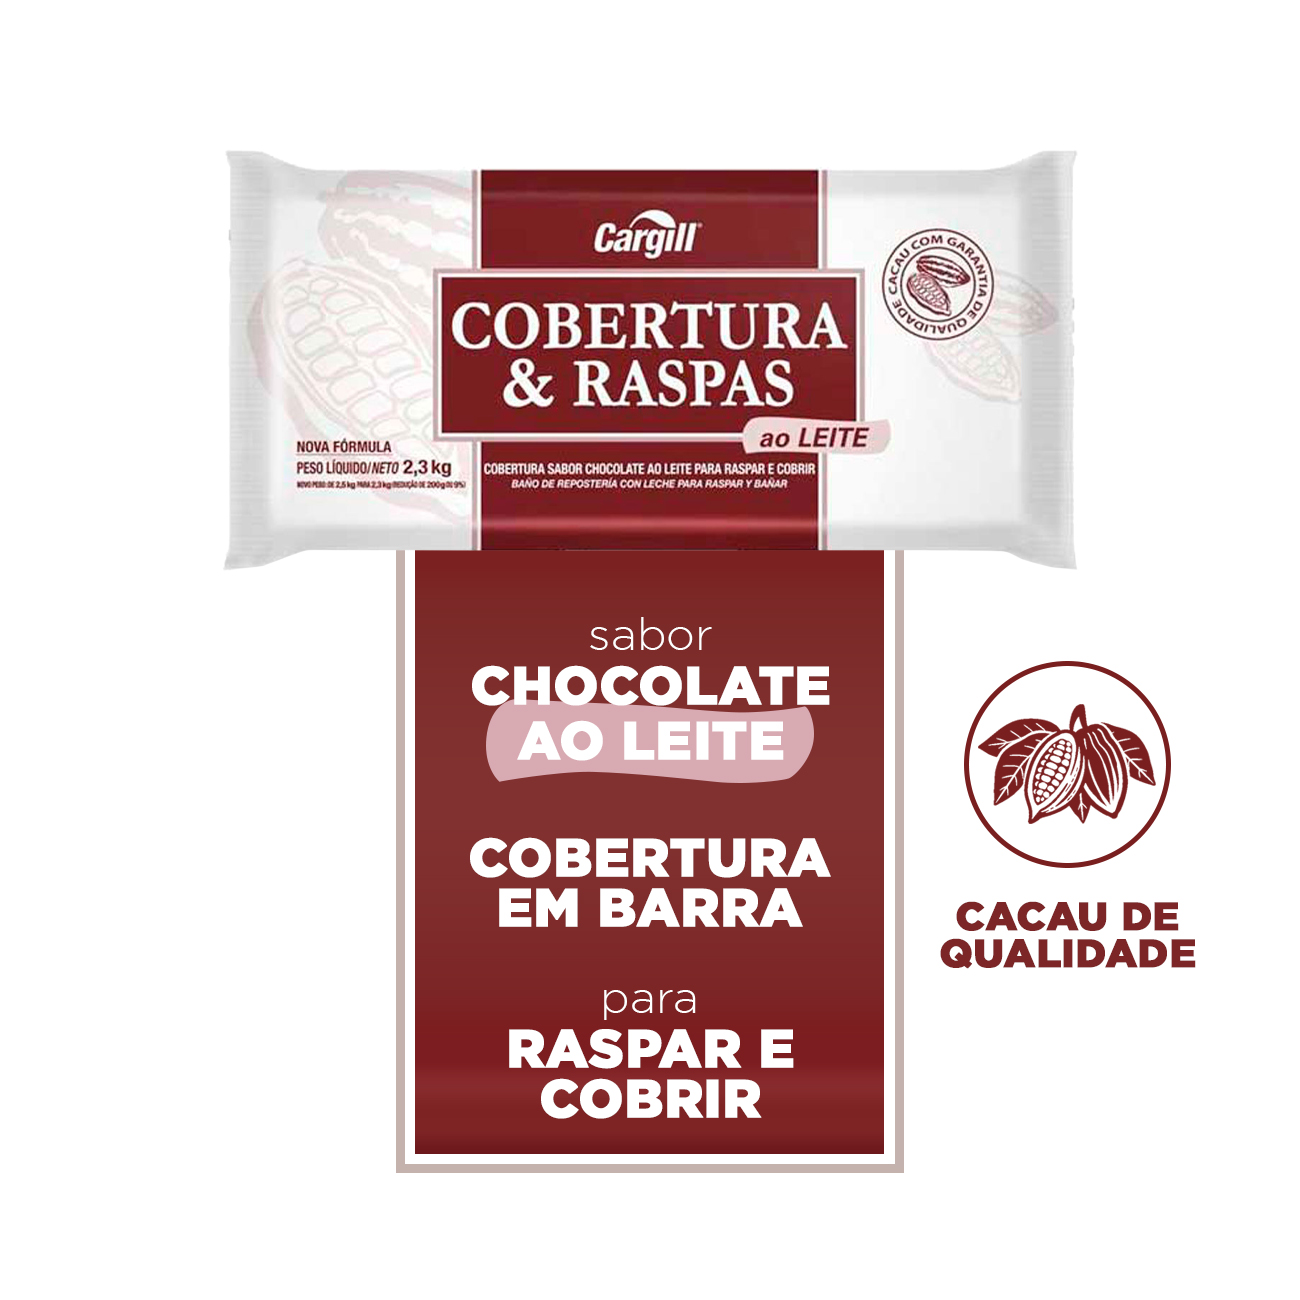 Cobertura de Chocolate em Barra Cargill Cobertura e Raspas ao Leite 2,3kg